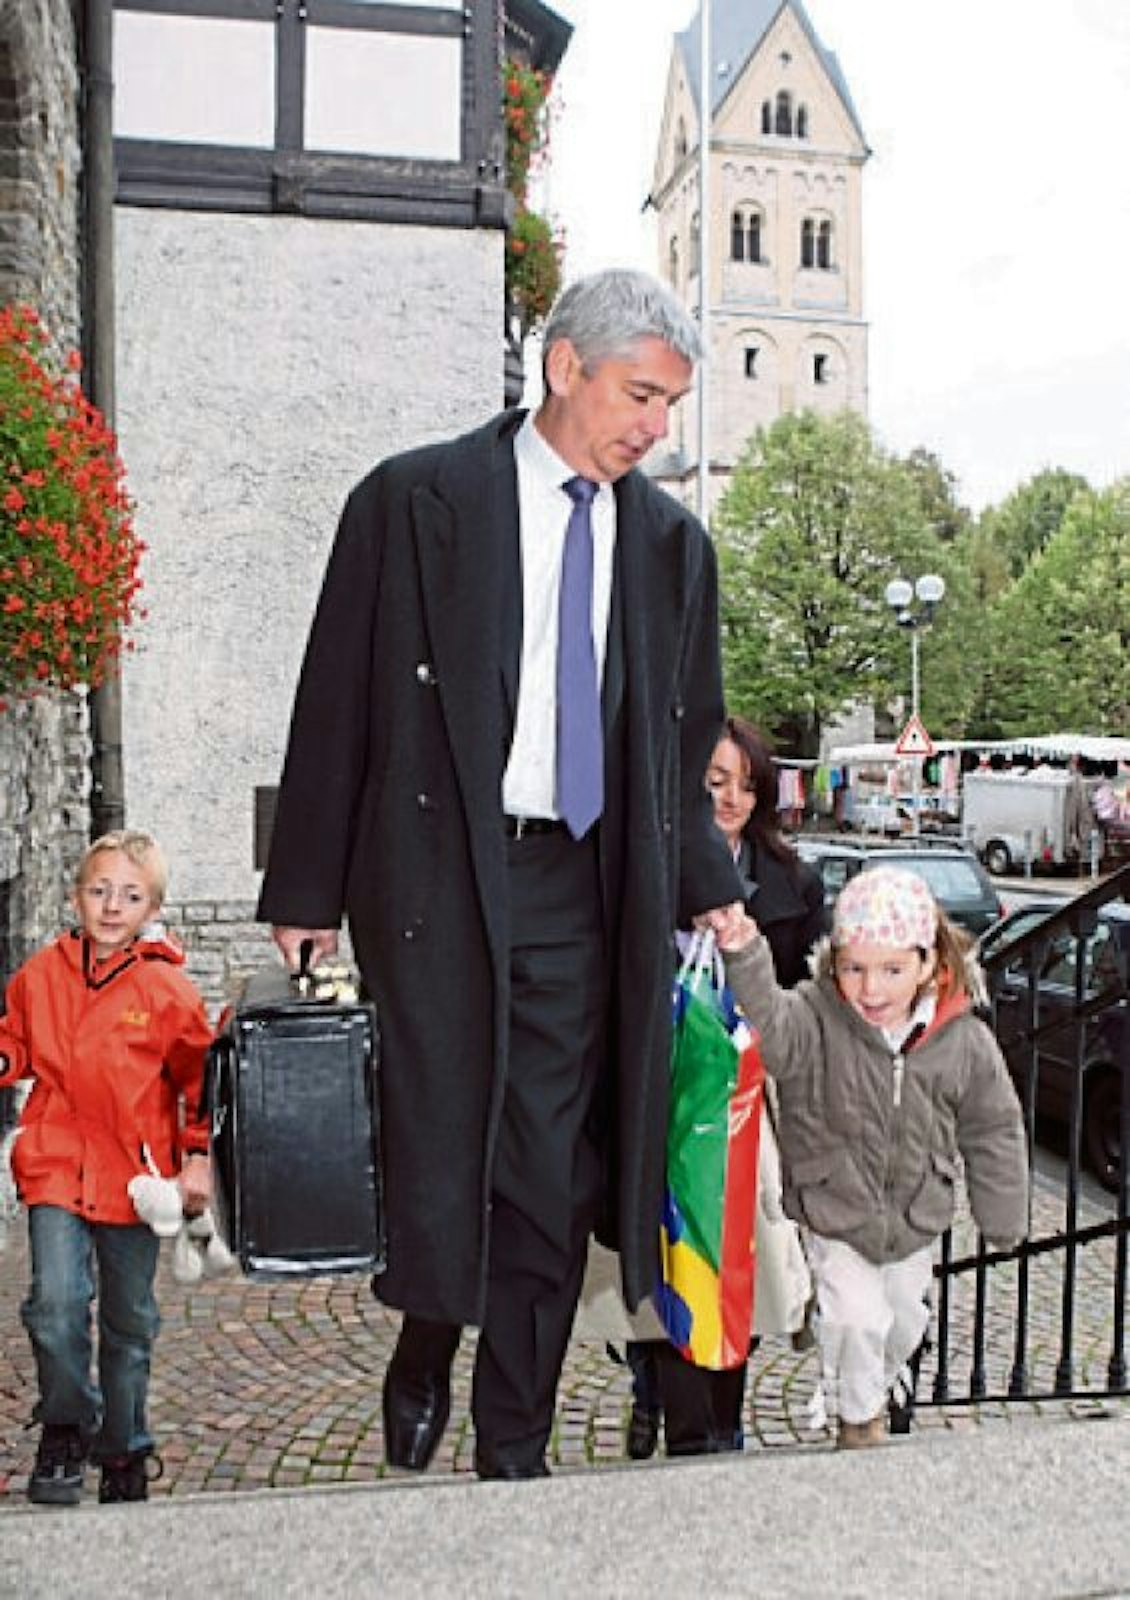 2009: Erster Einzug ins Gladbacher Rathaus. Die Kinder helfen beim Koffertragen.